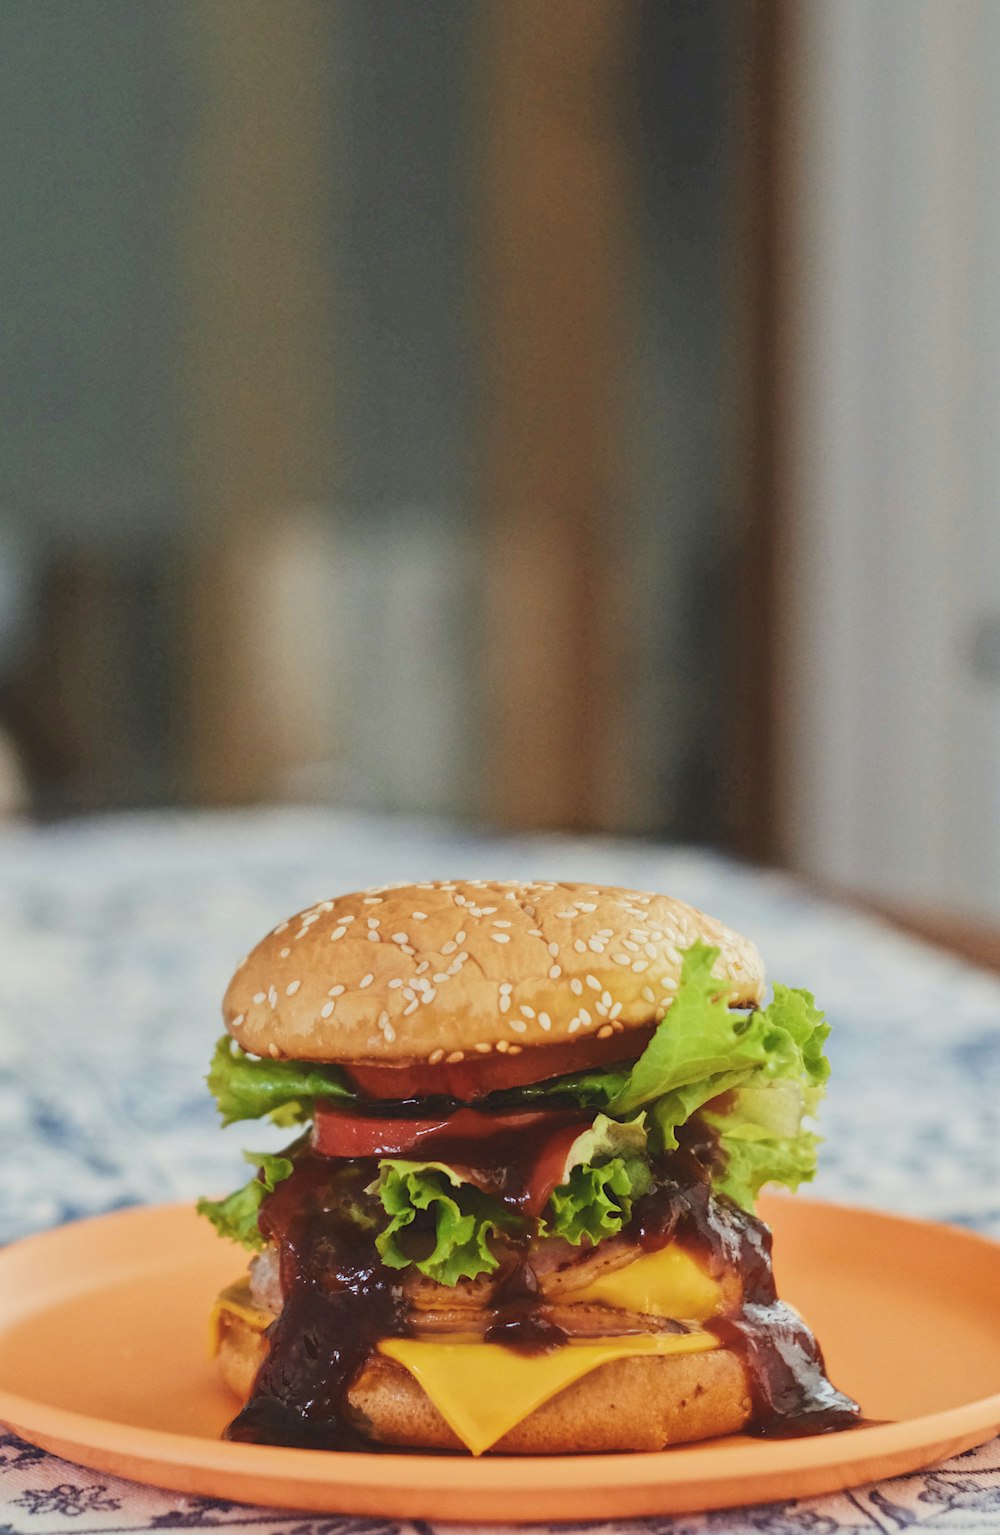 burger on orange plate